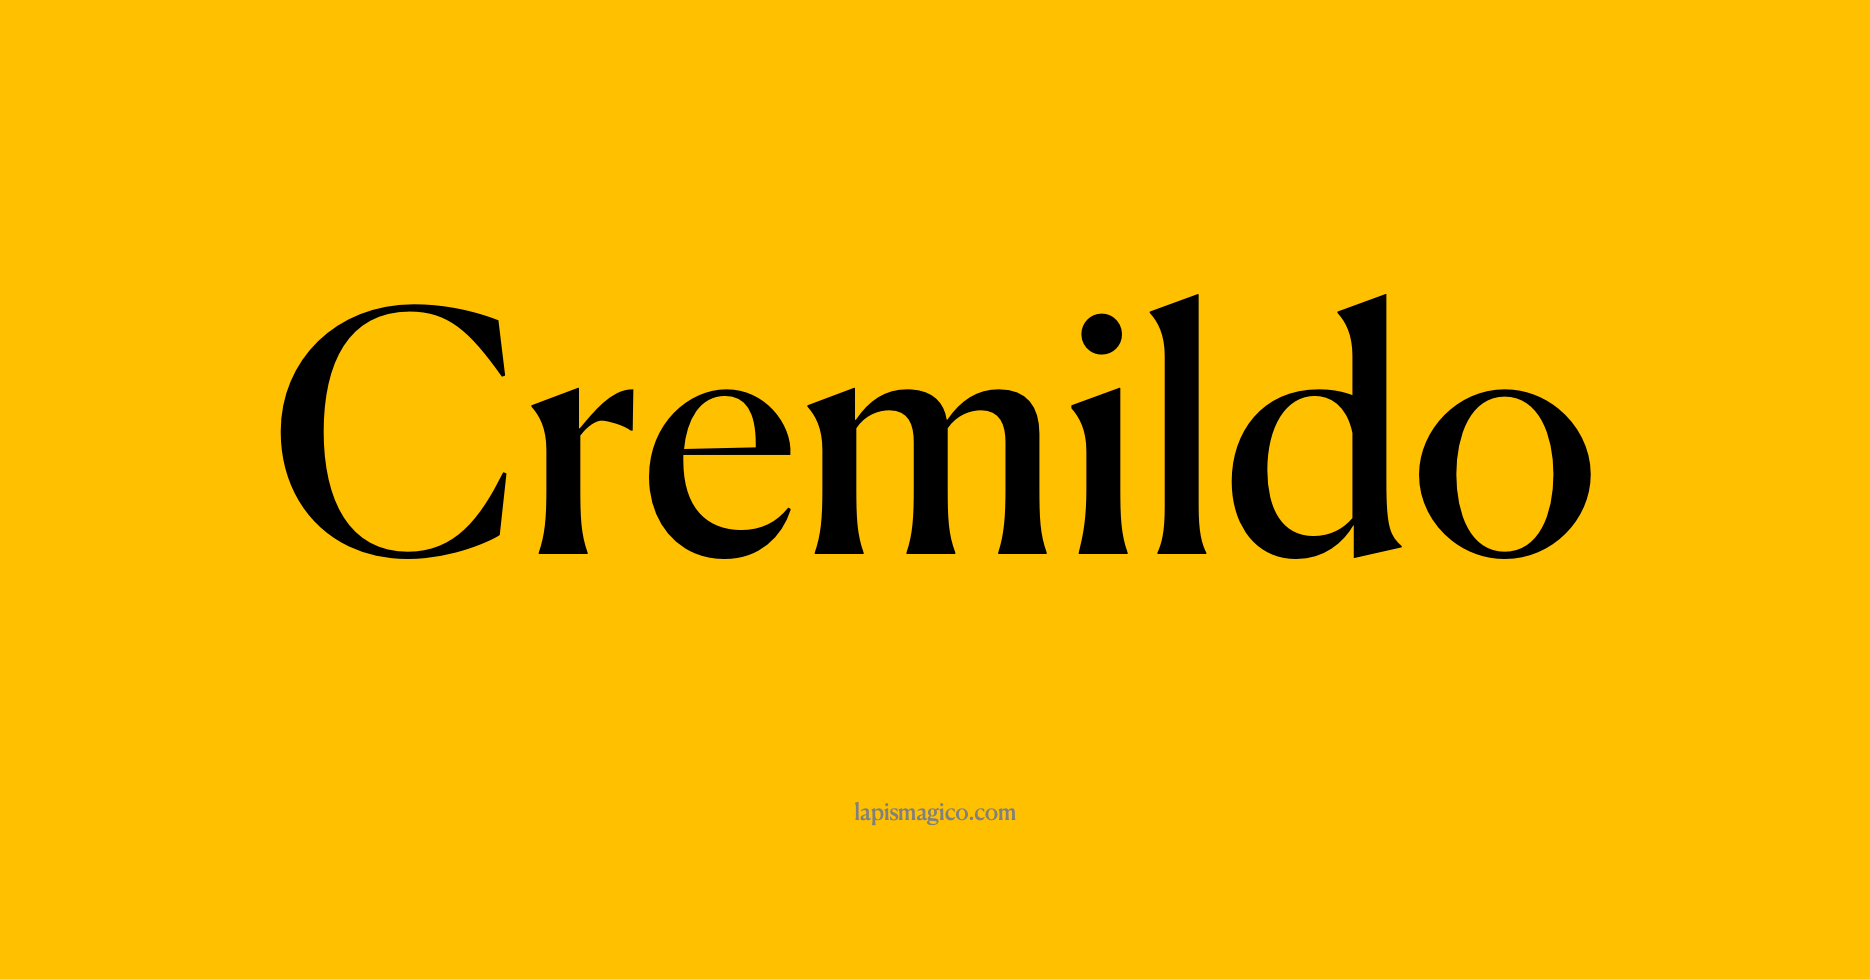 Nome Cremildo, ficha divertida com pontilhado para crianças